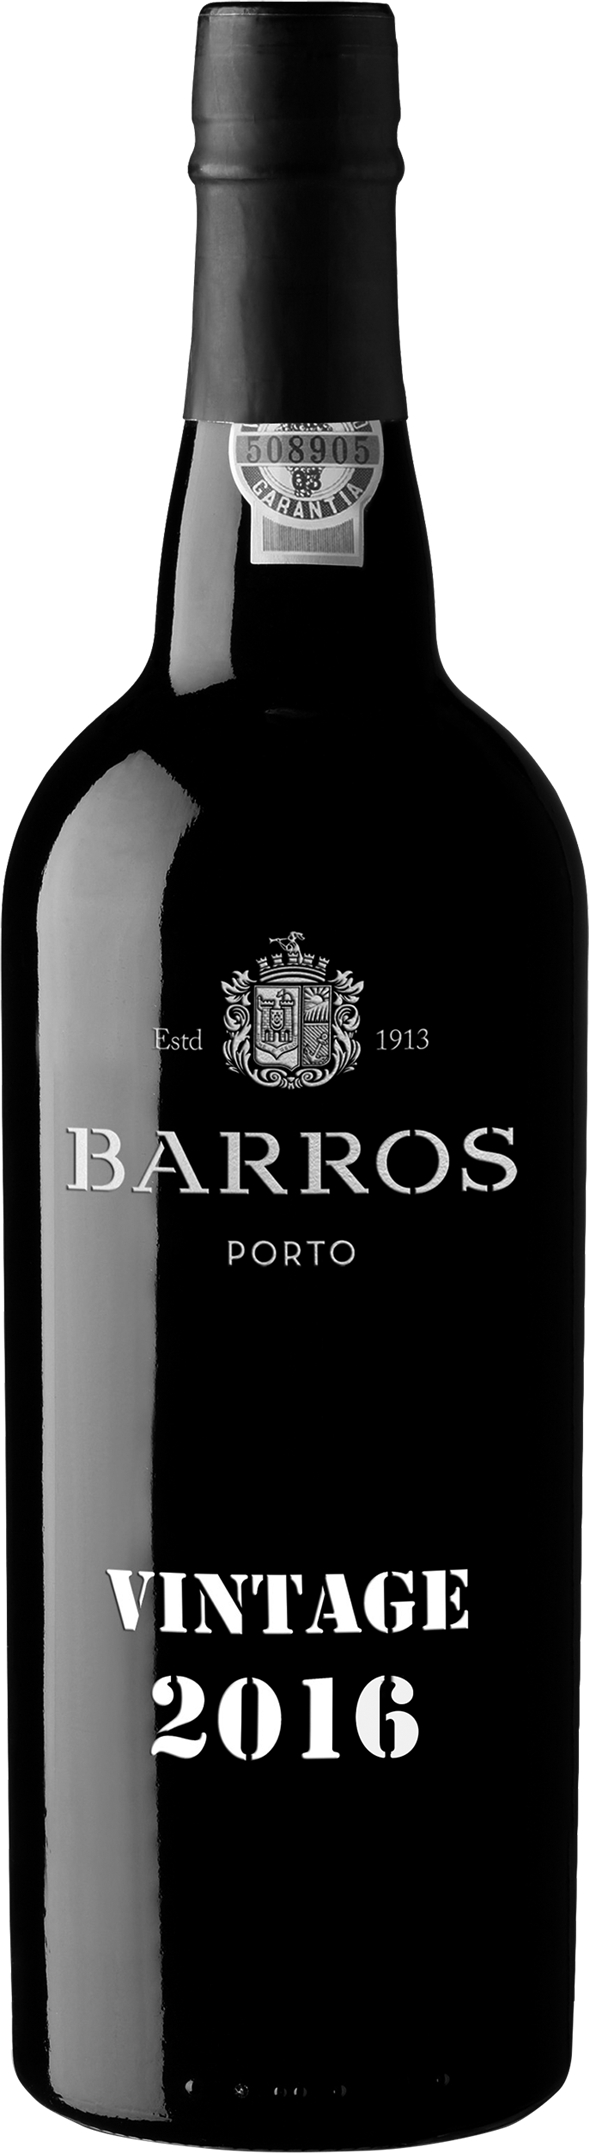 Barros vintage 2016